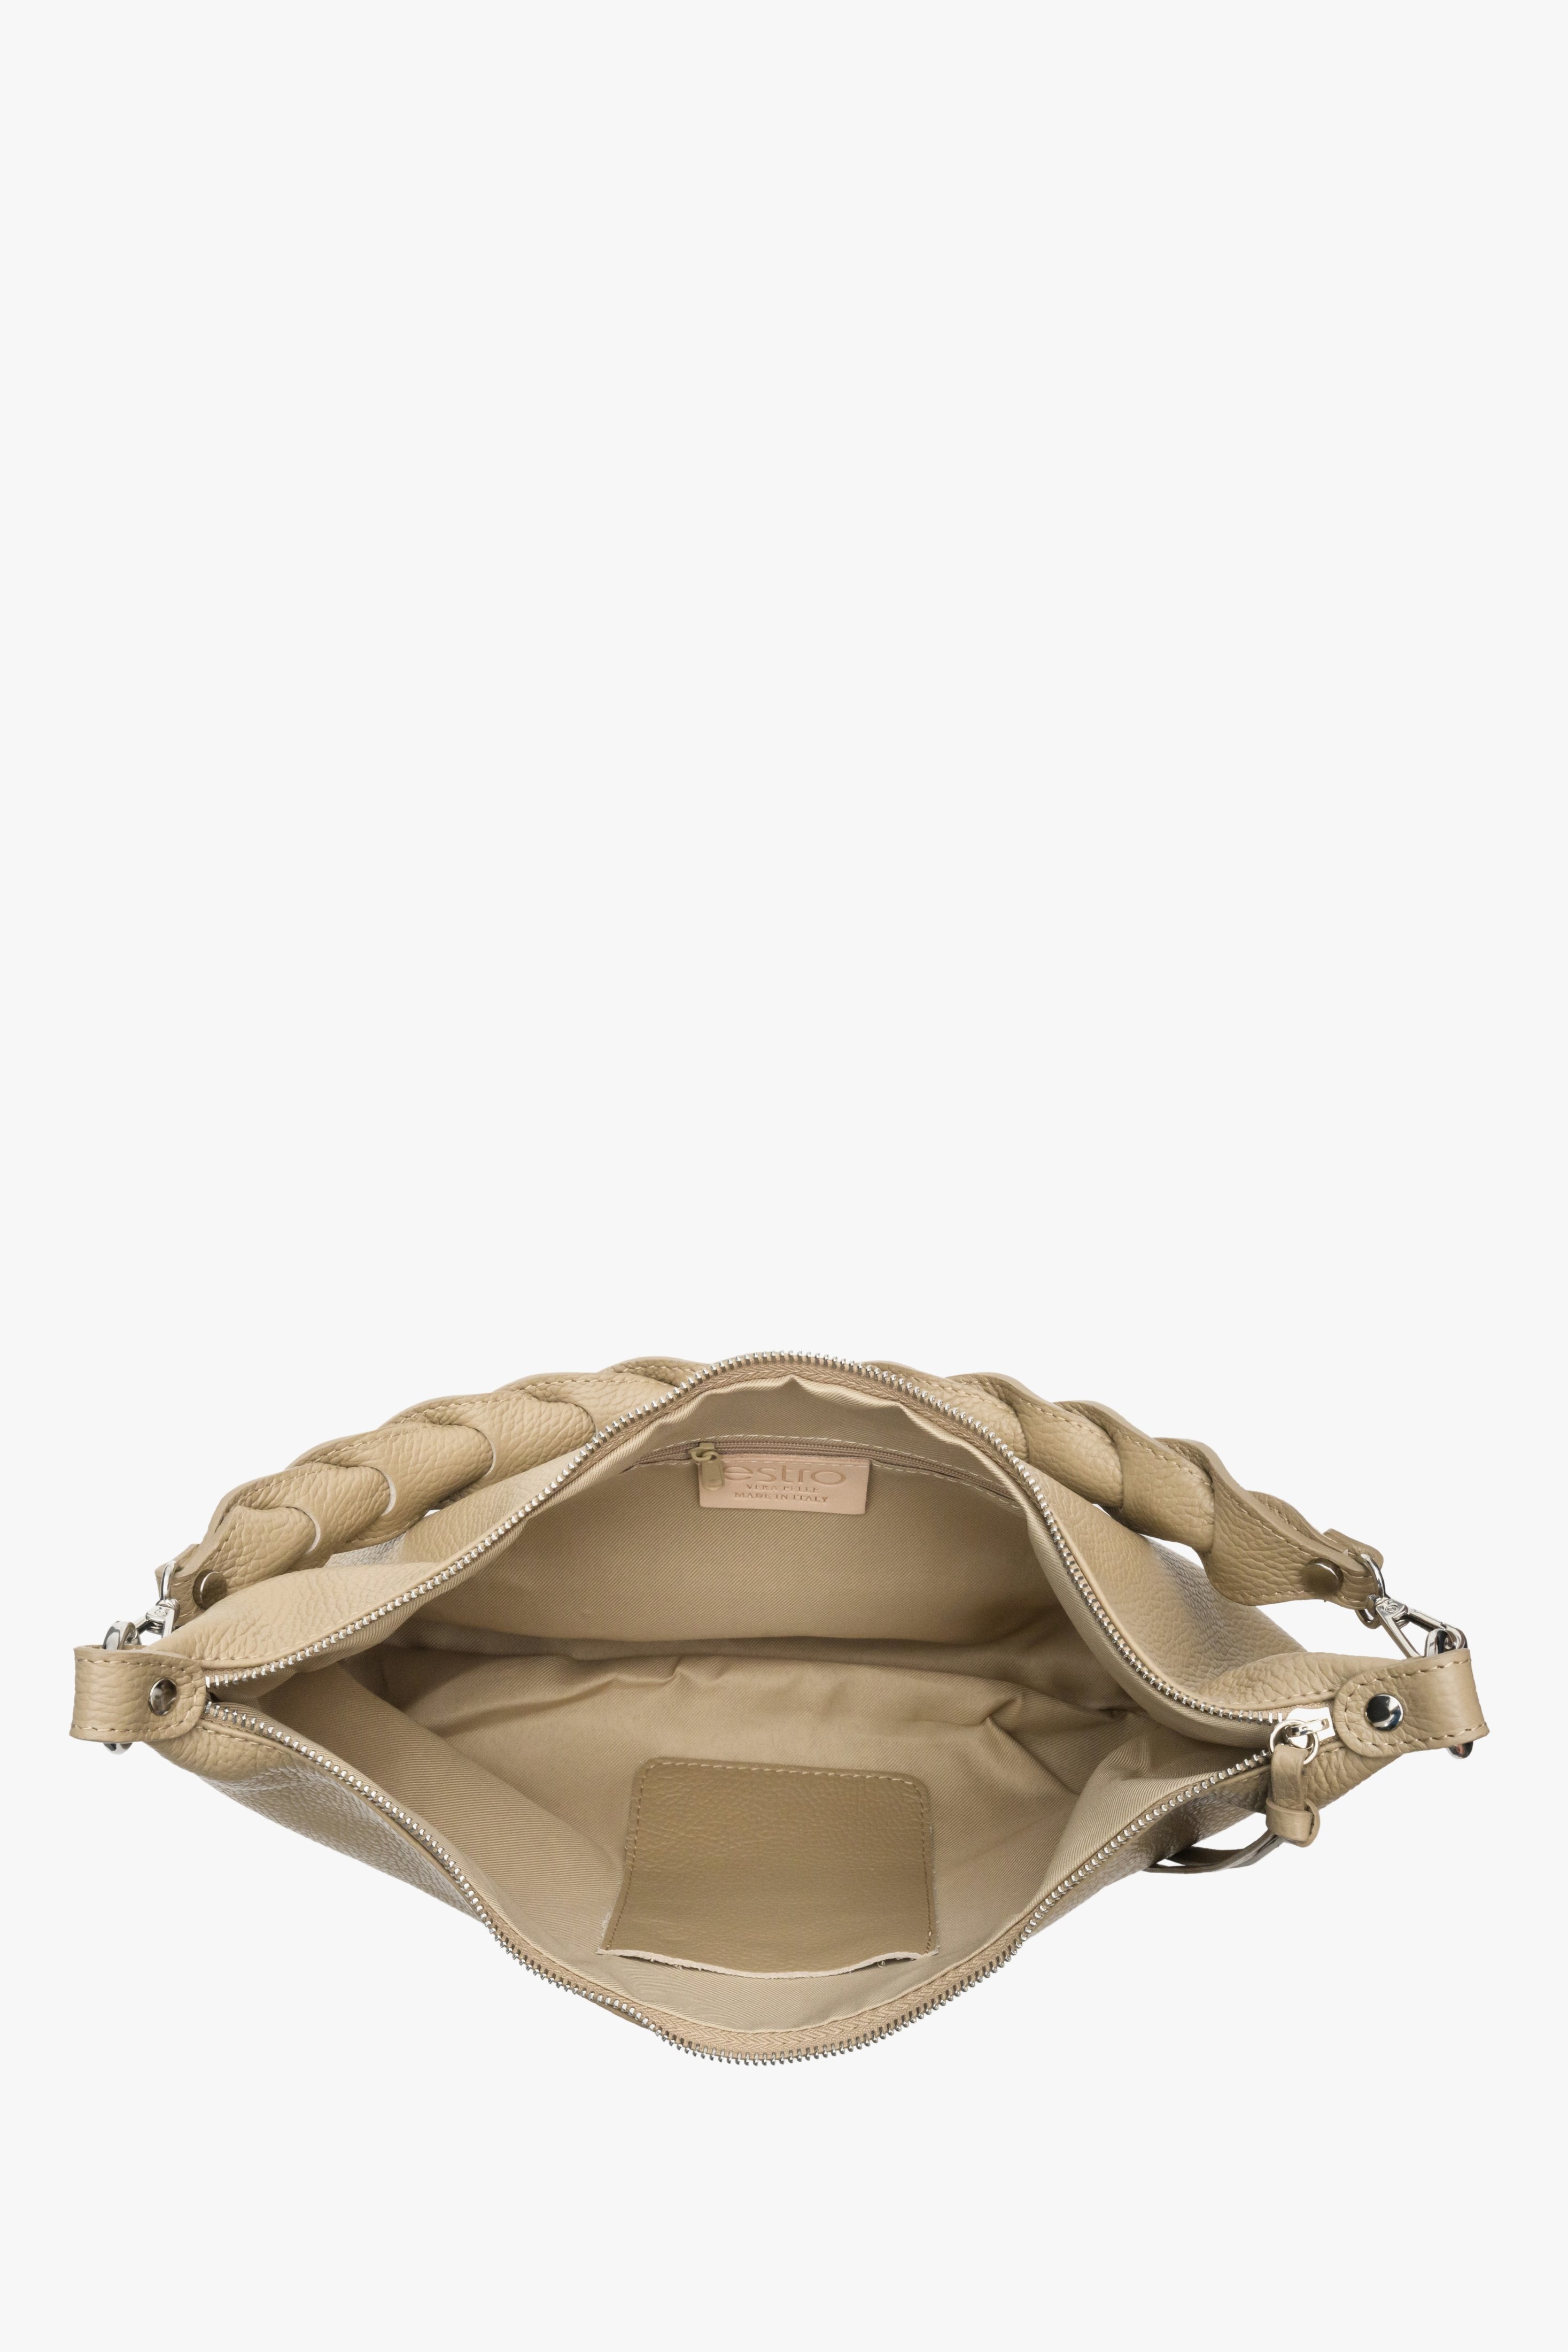 Torebka damska typu shoulder bag z włoskiej skóry naturalnej z plecionym paskiem - zbliżenie na wnętrze modelu w kolorze beżowym.